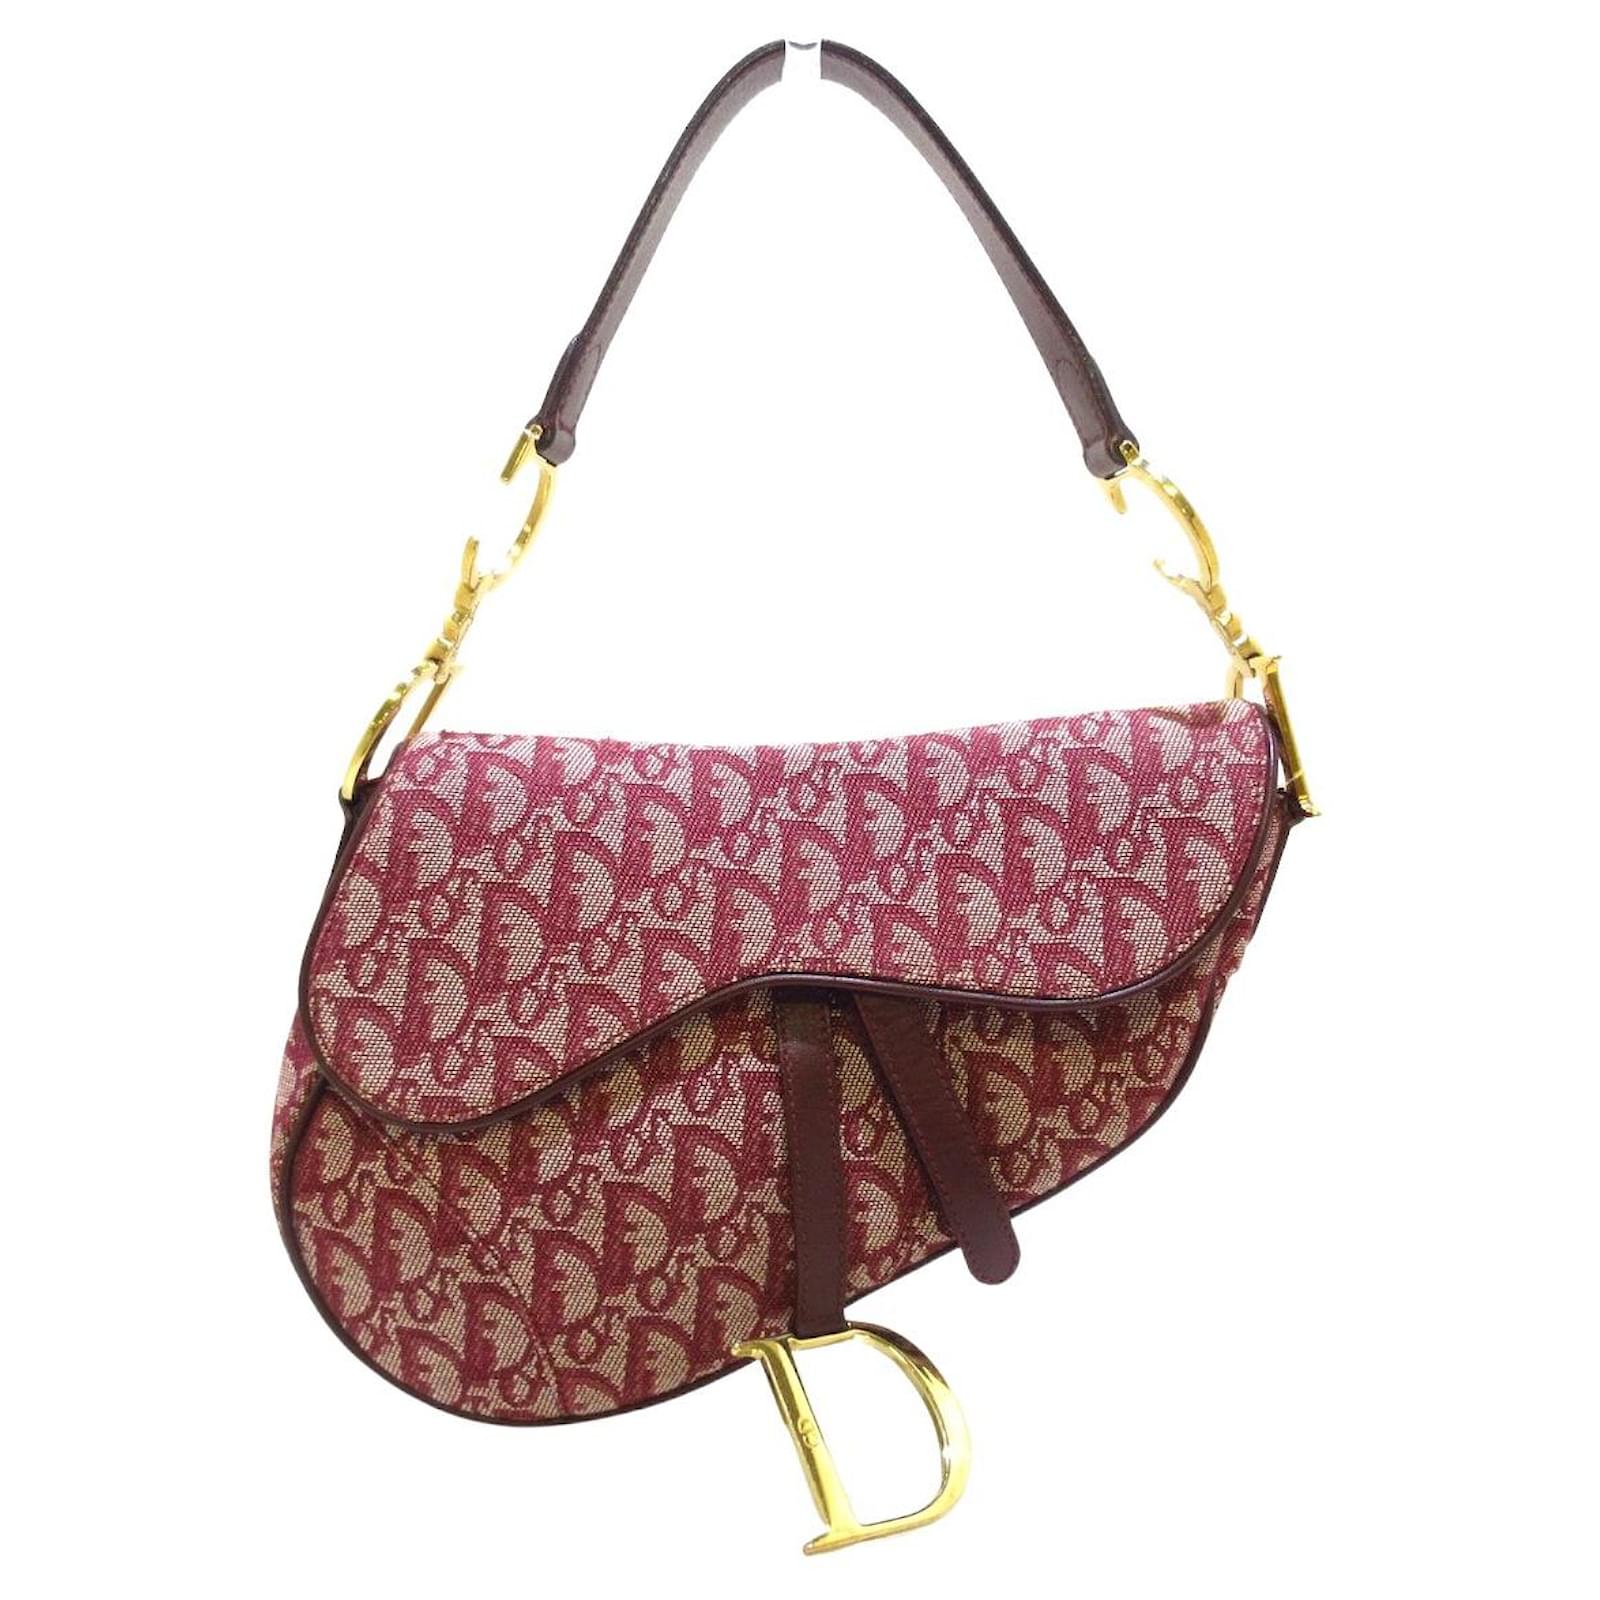 Saddle cloth handbag